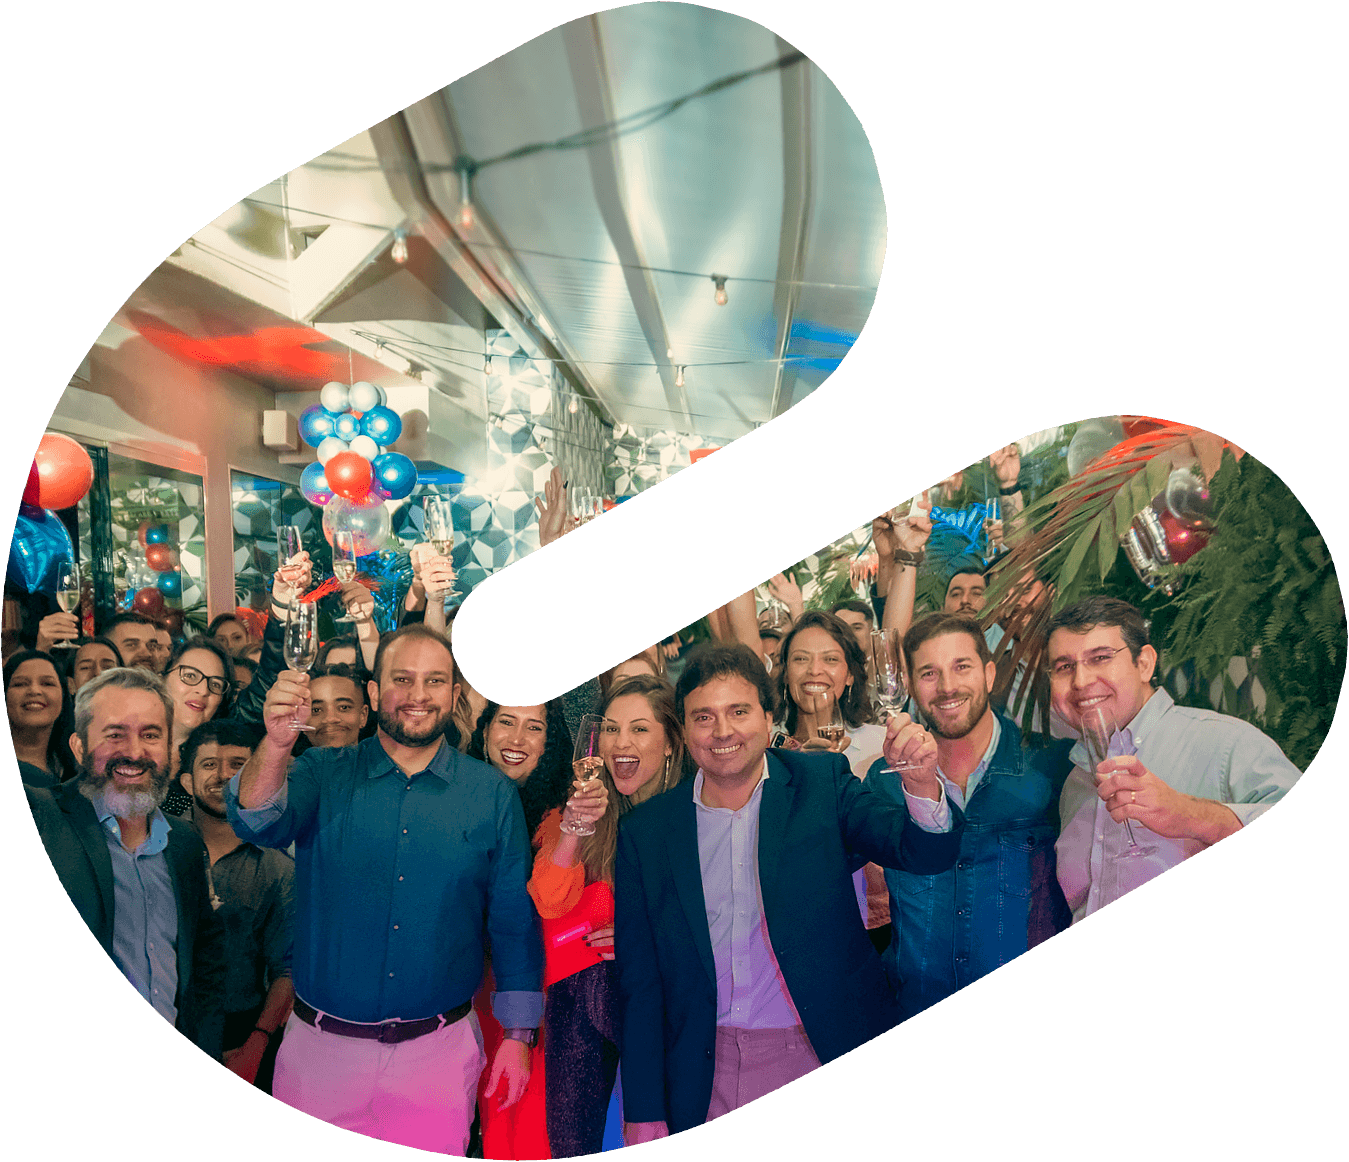 Foto ilustrativa do time Supercomm em dia de festa de aniversário da empresa